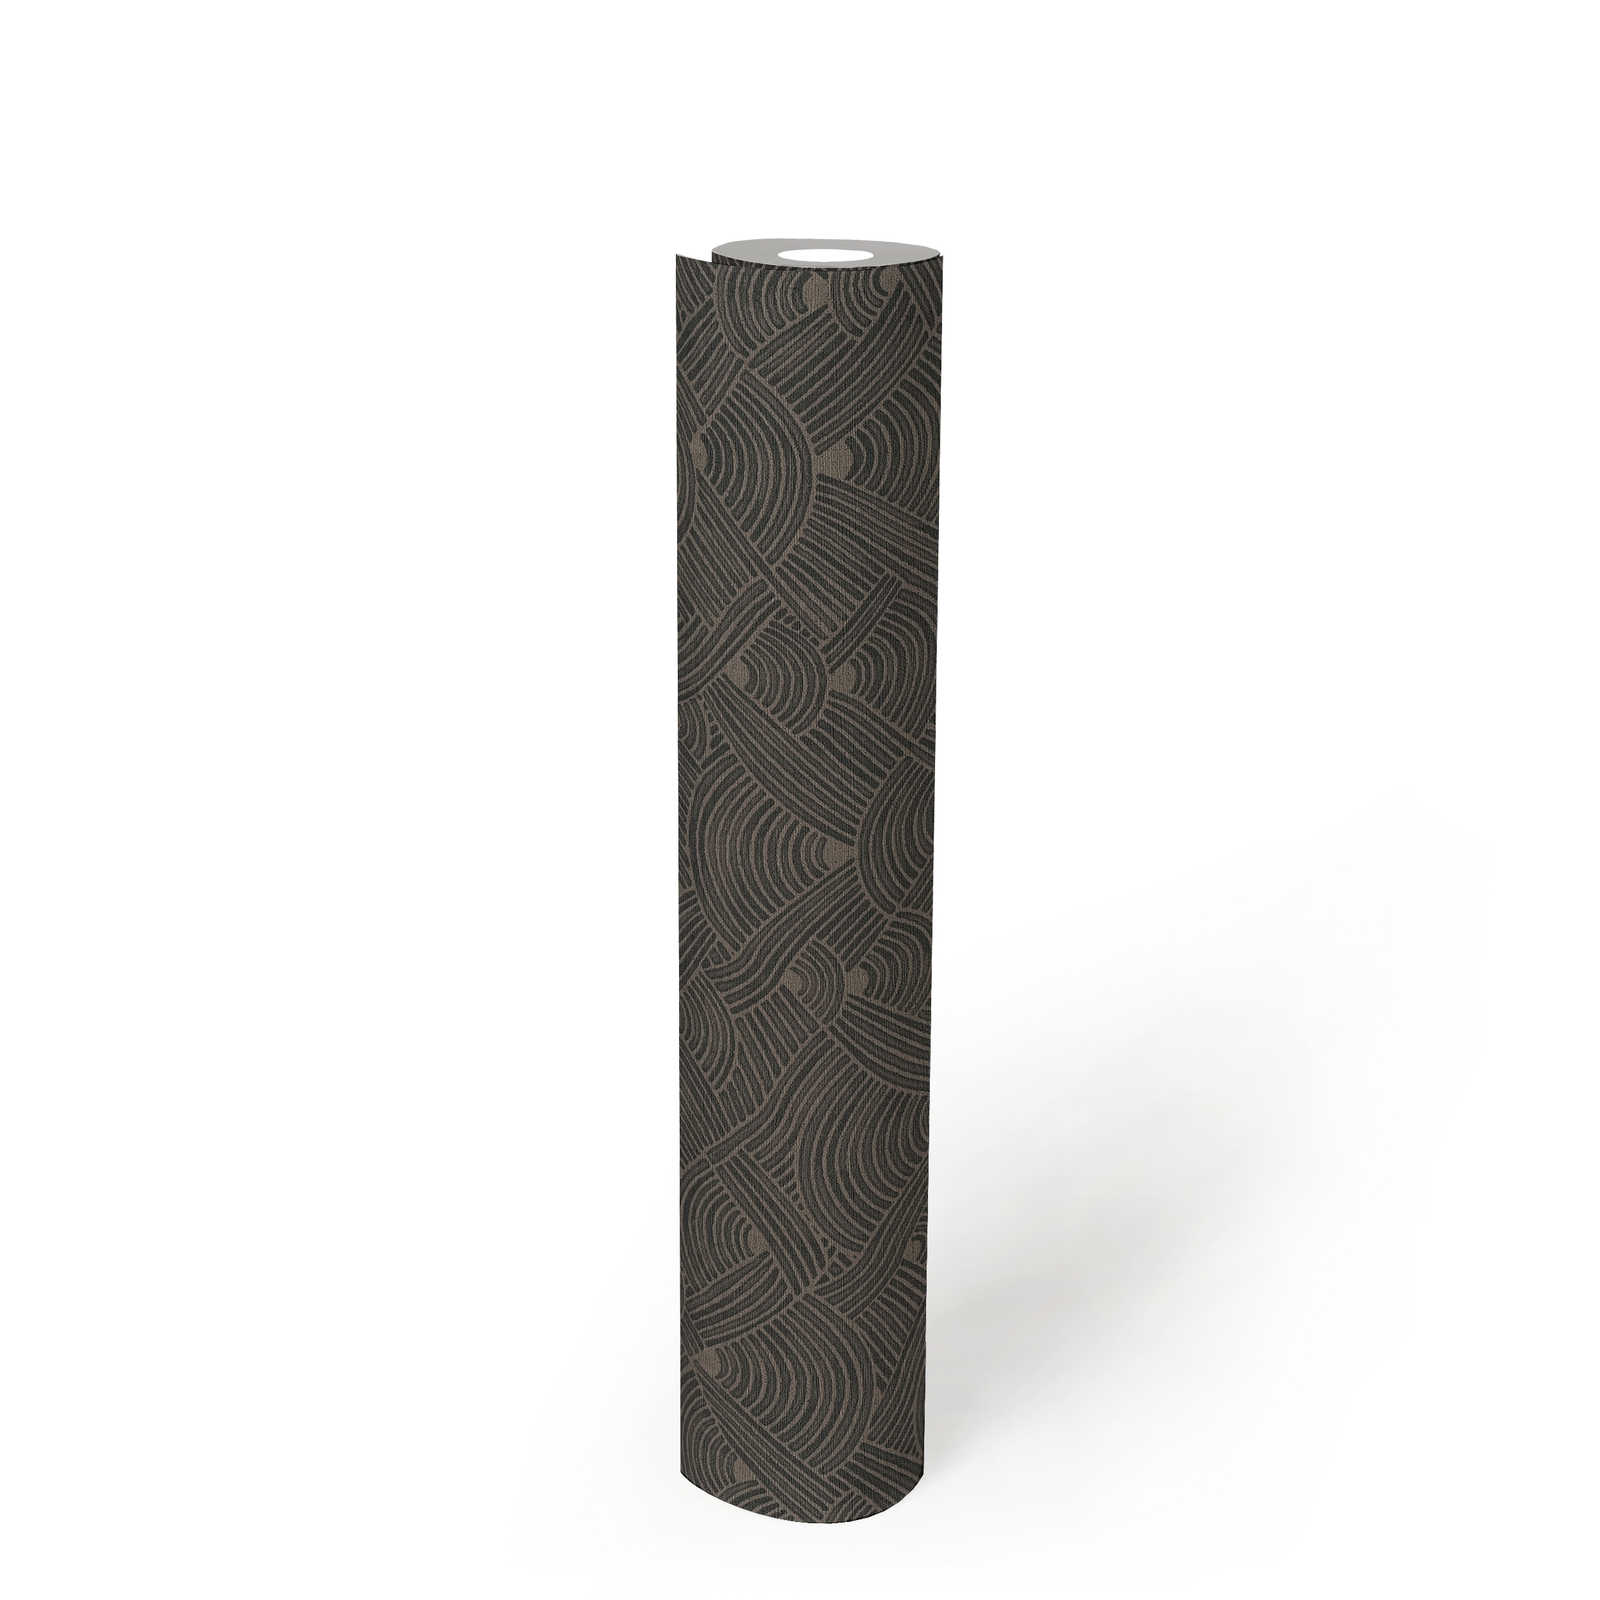             Dunkle Tapete Flechtmotiv mit Strukturdesign – Grau, Schwarz
        